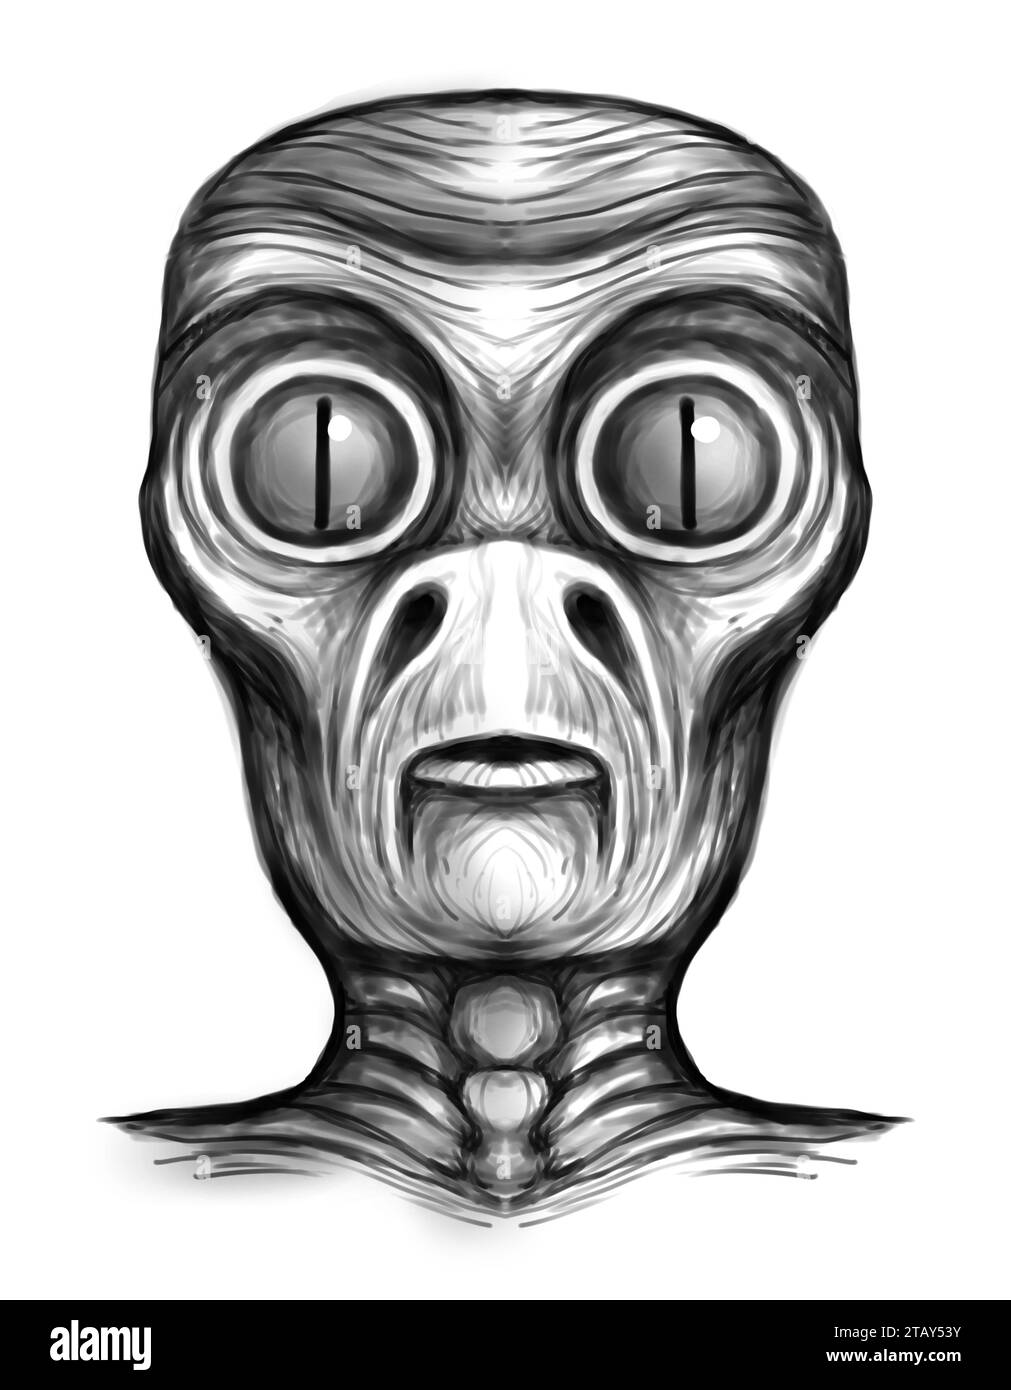 Créature extraterrestre - peinture numérique Banque D'Images